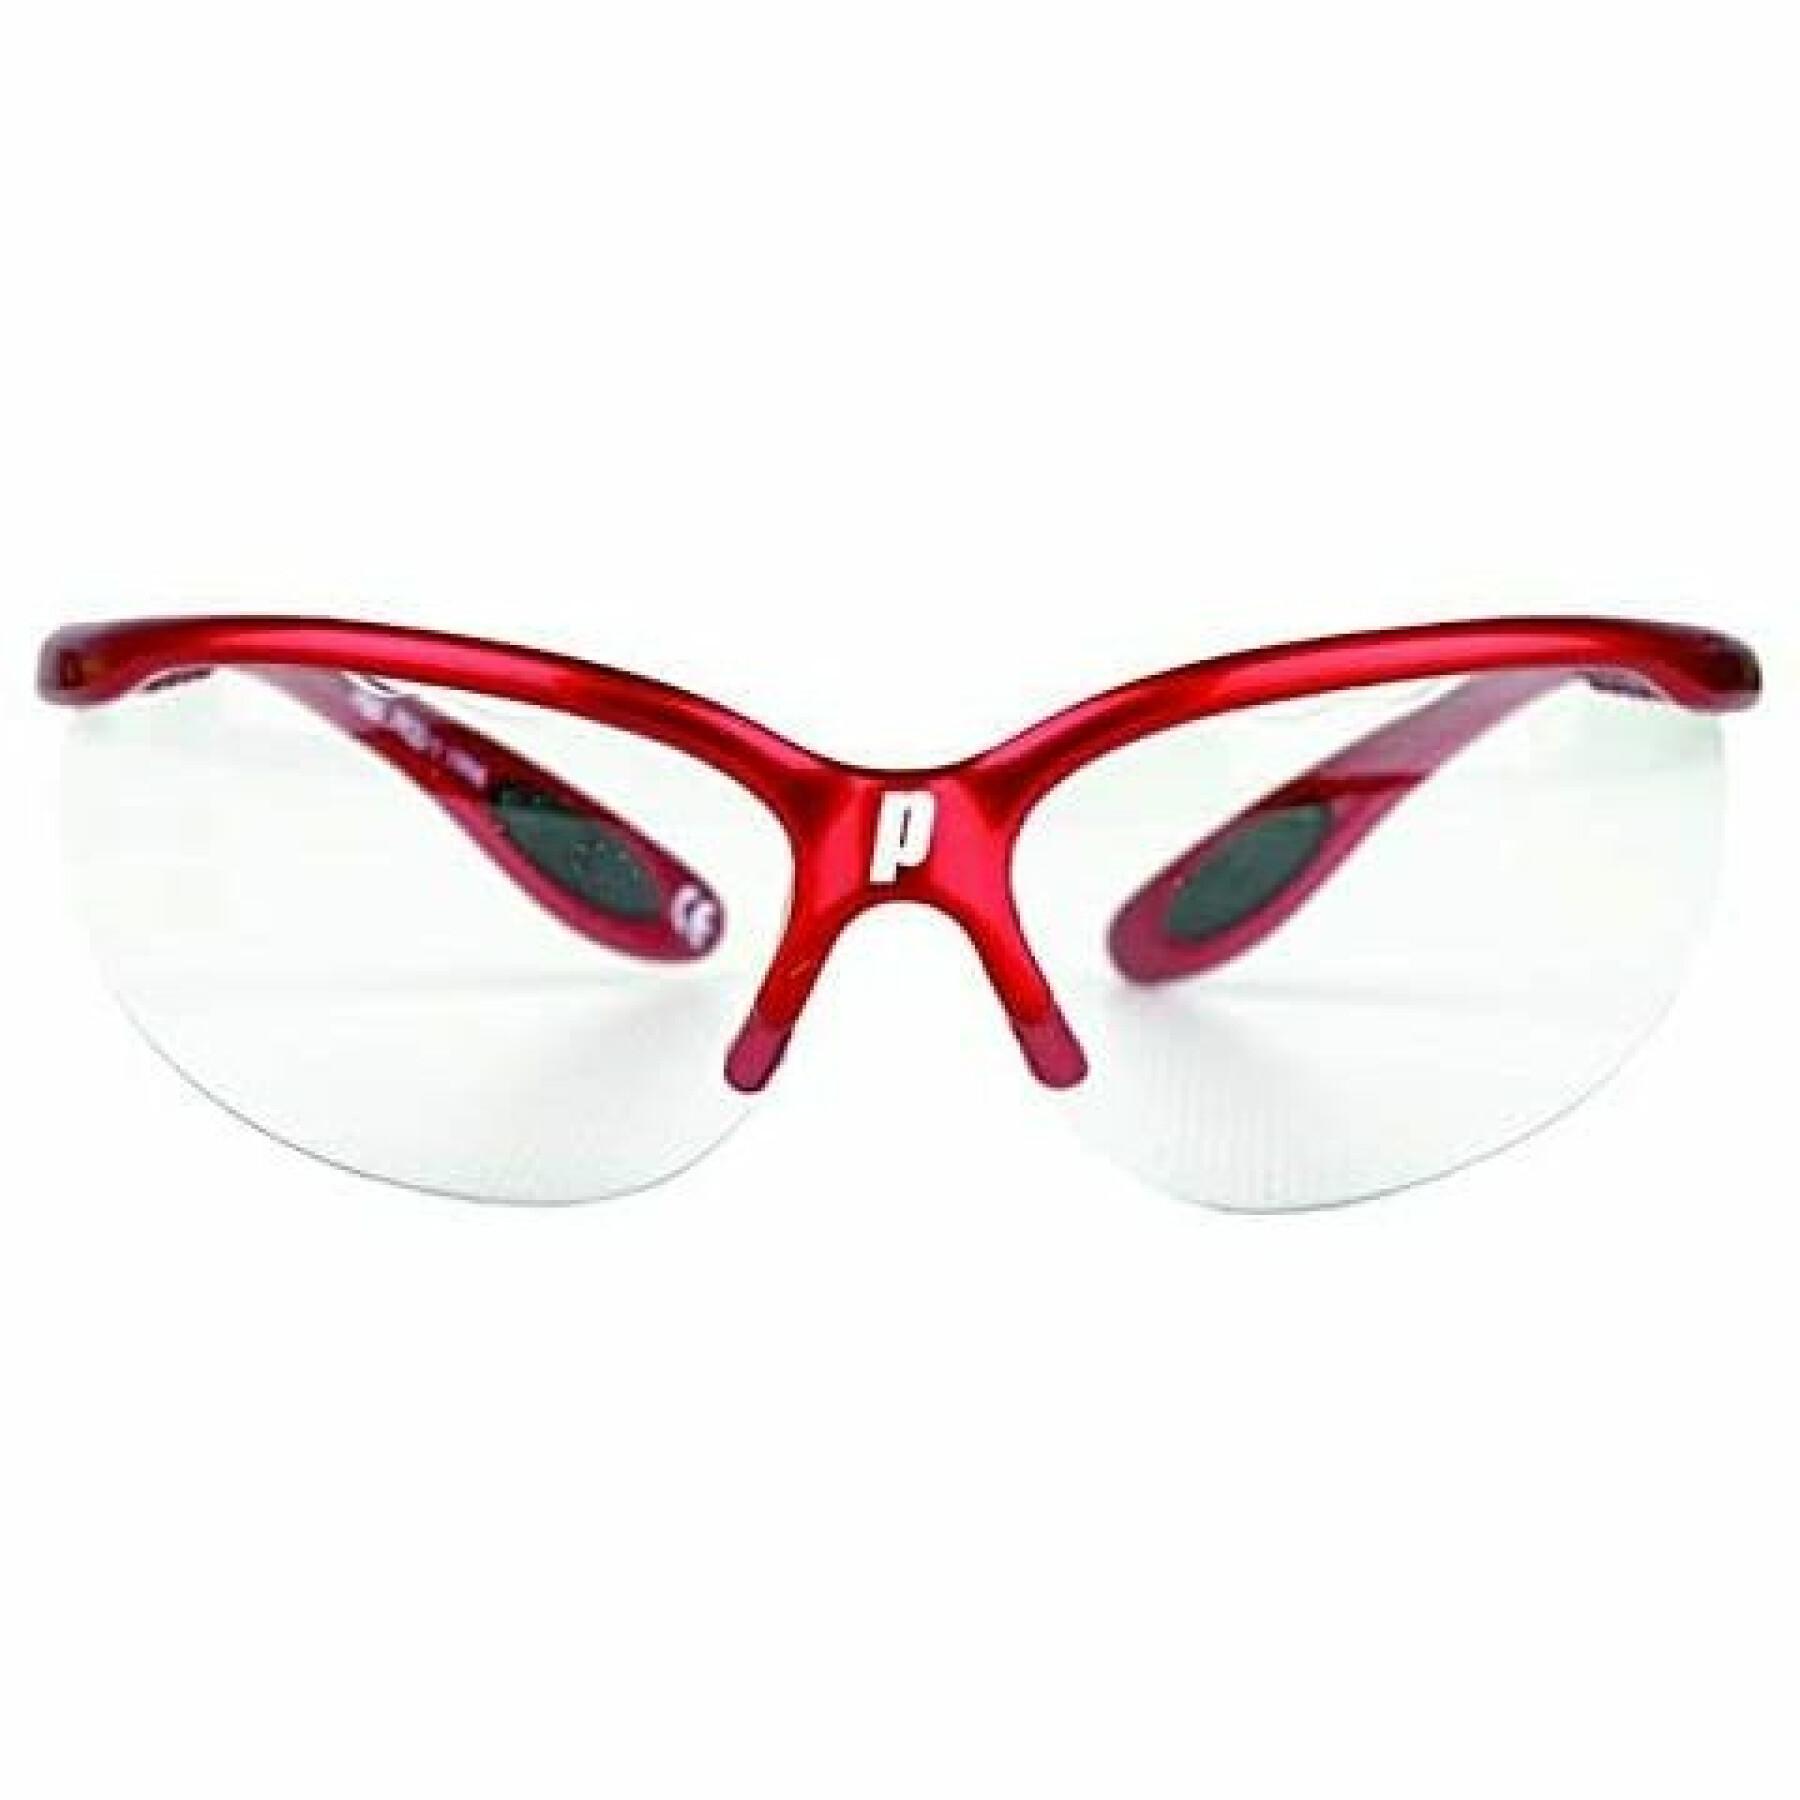 Óculos de squash Prince Pro Lite Metallic